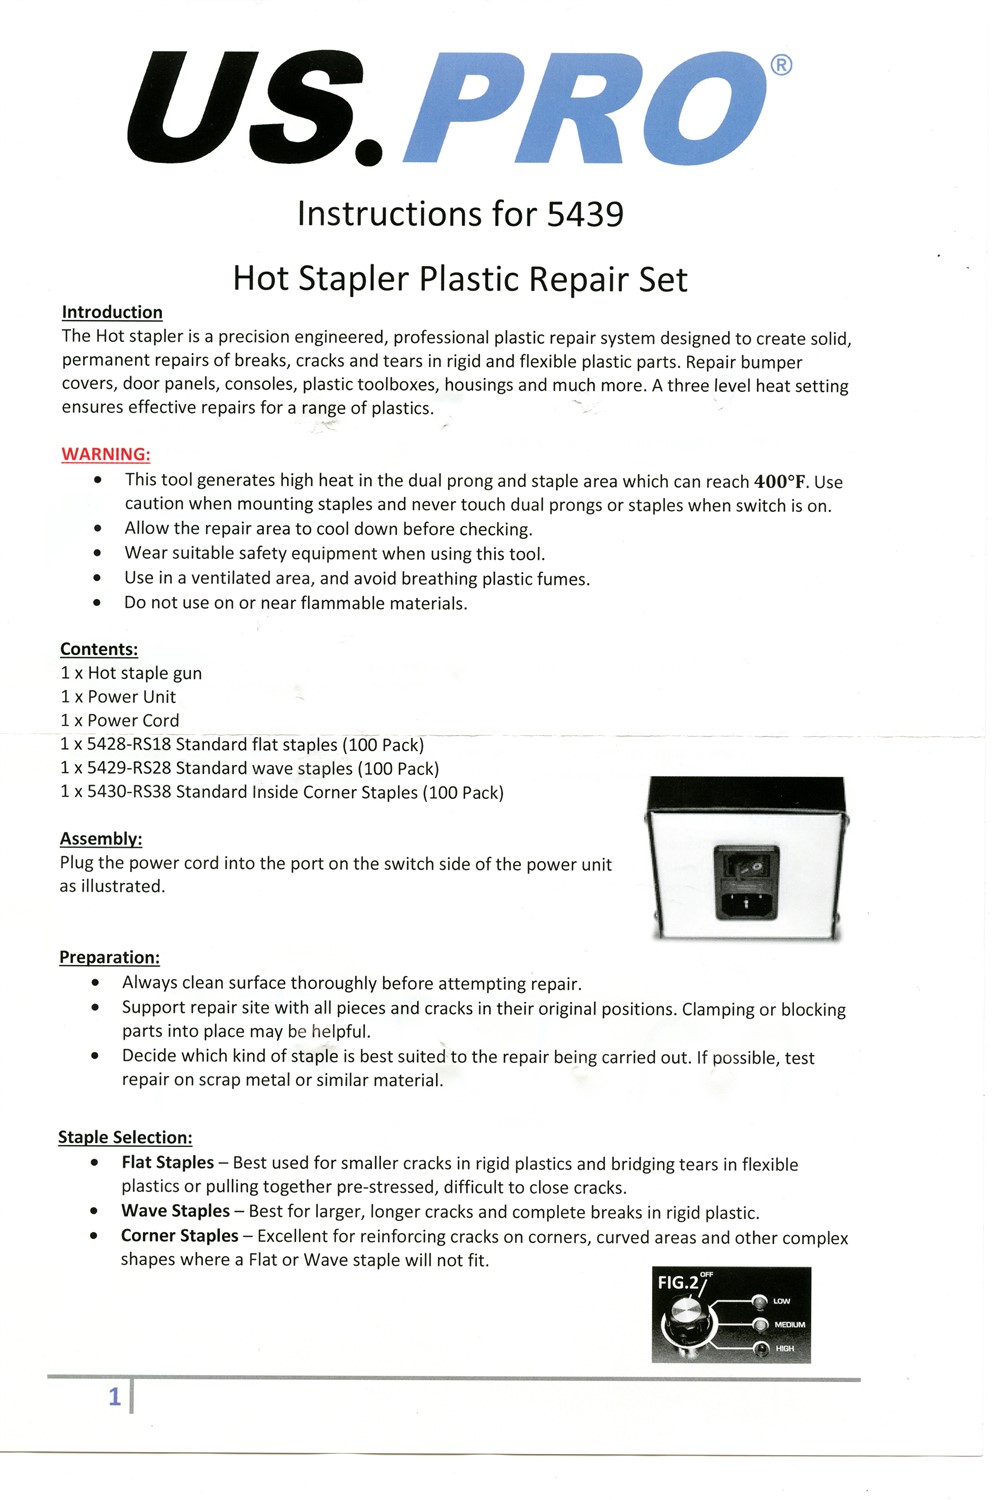 Hot Stapler Instructions-1.jpg